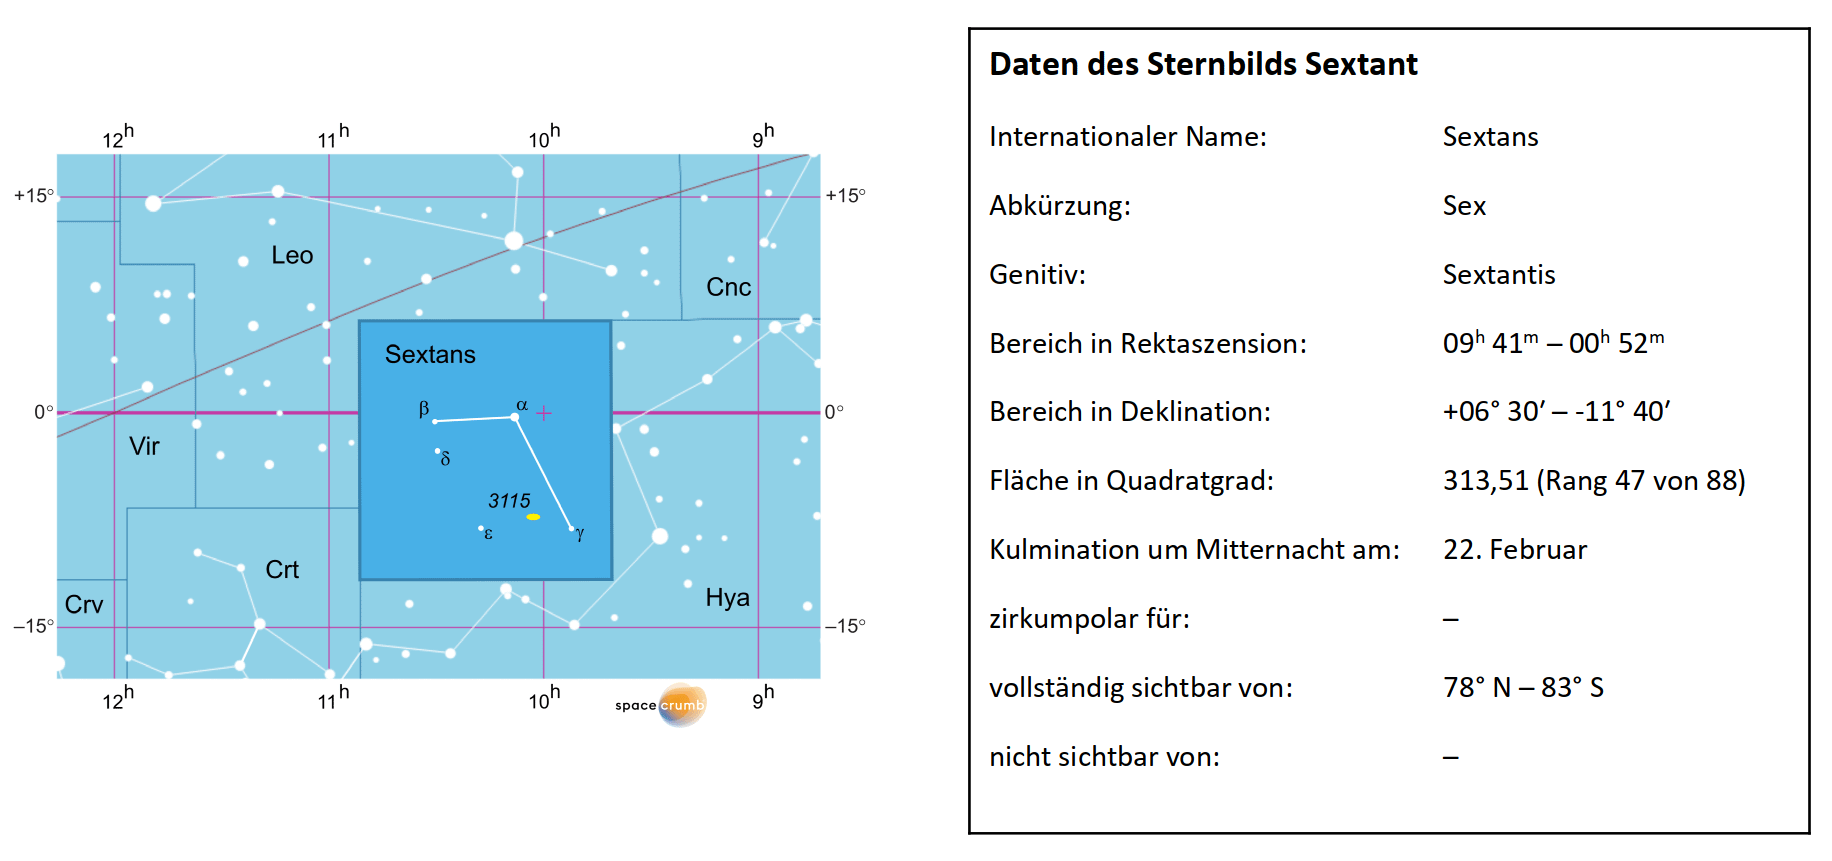 Links zeigt eine mit Koordinaten versehene Karte eines Himmelsausschnitts weiße Sterne auf hellblauem Hintergrund. Die Fläche, die das Sternbild Sextant einnimmt, ist dunkelblau hervorgehoben. Eine Tabelle rechts gibt wichtige Daten des Sternbilds an.